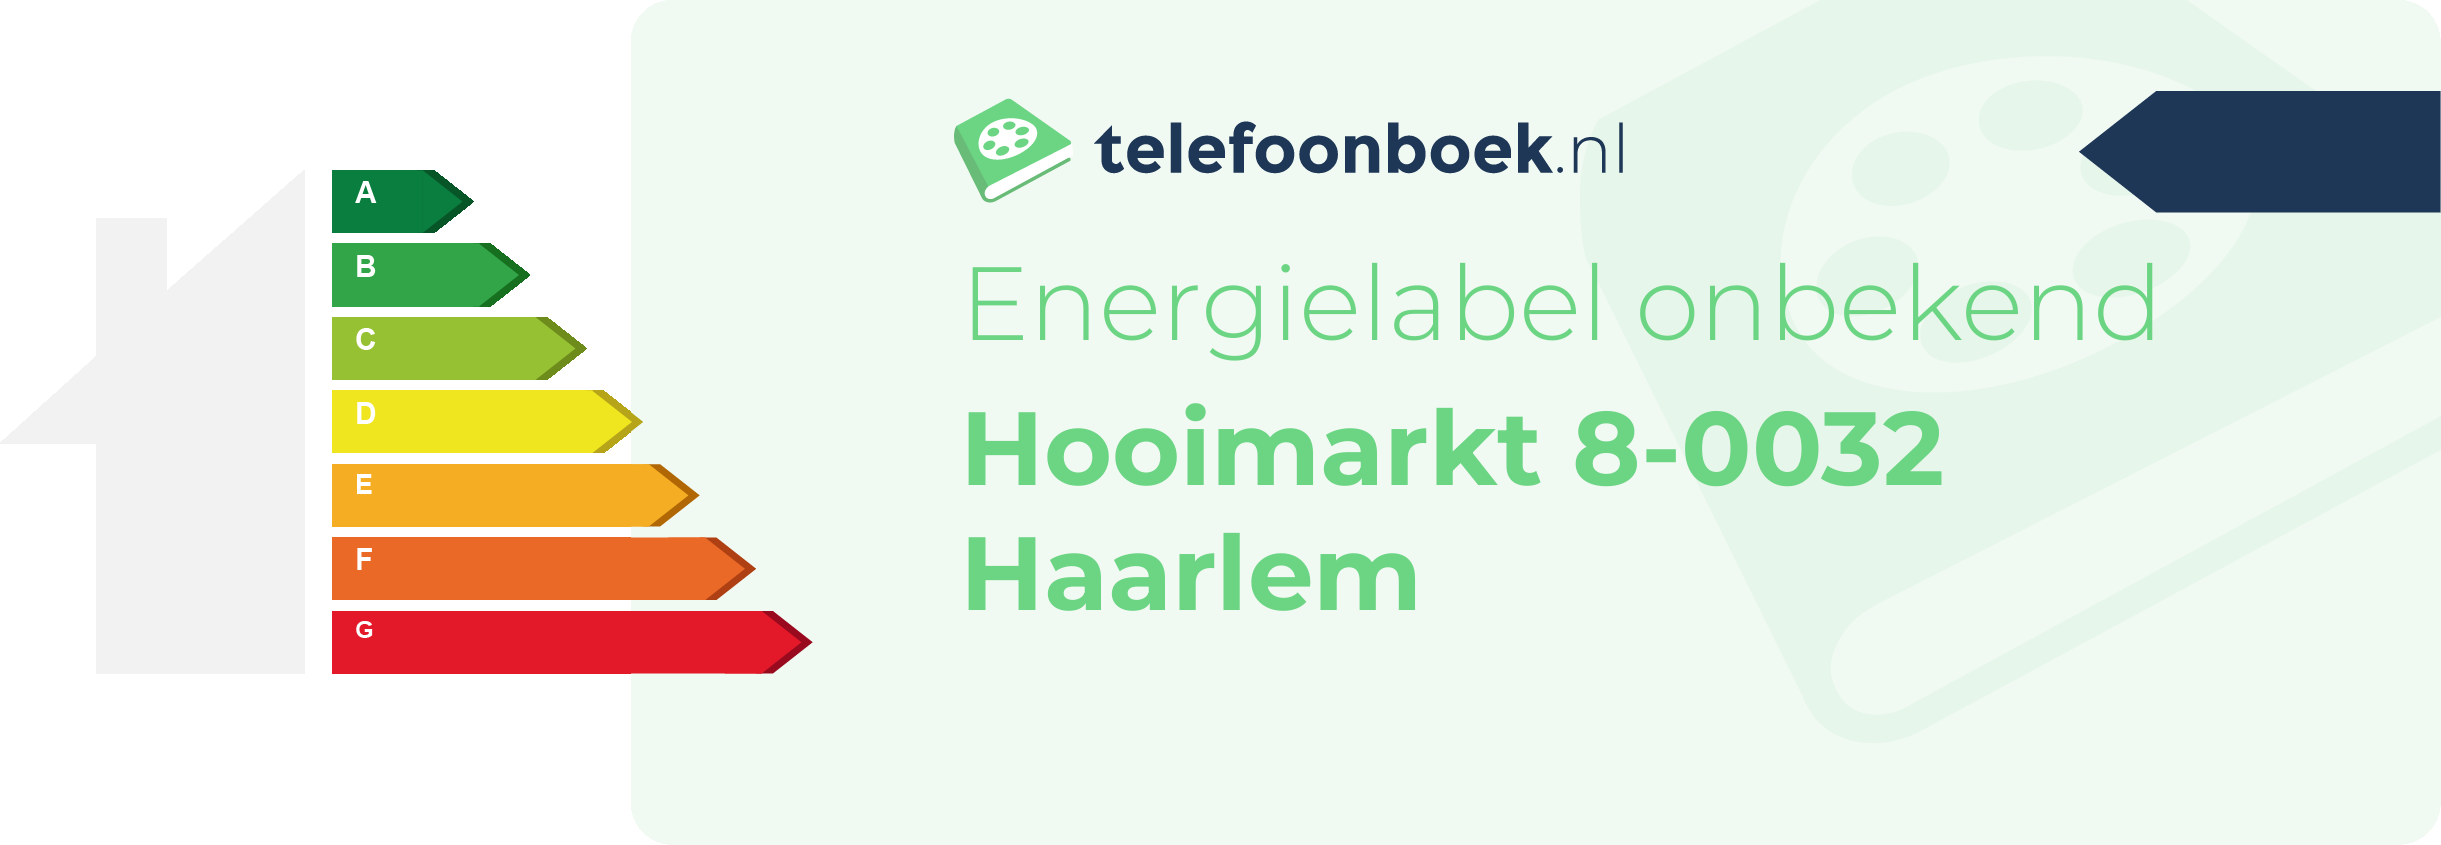 Energielabel Hooimarkt 8-0032 Haarlem